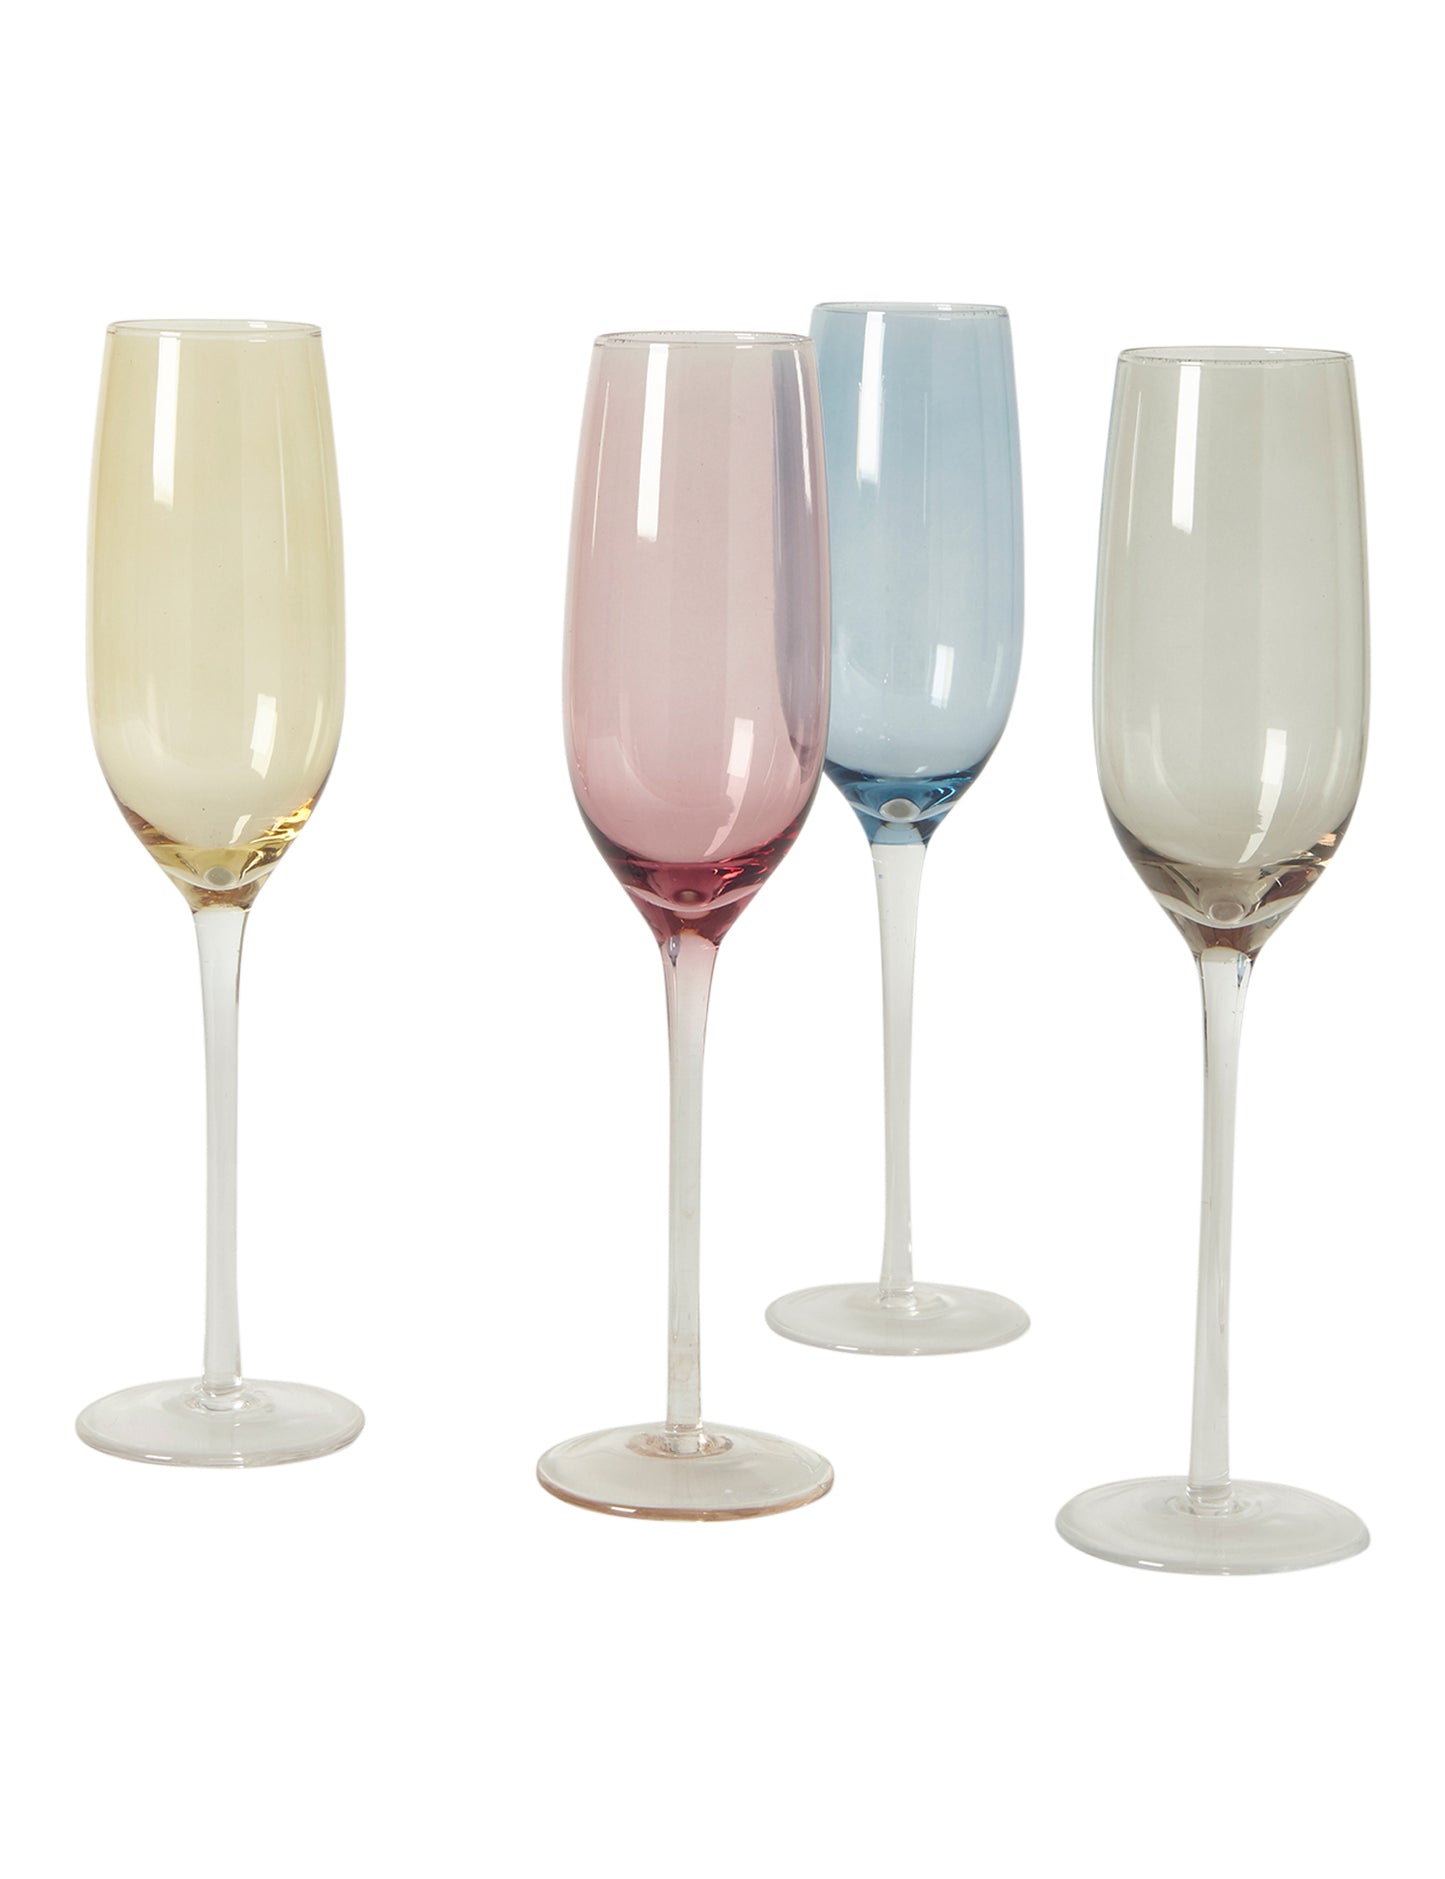 OUTLET - Champagne glas 20cl - sæt á 4 stk. indfarvet ass. farver.